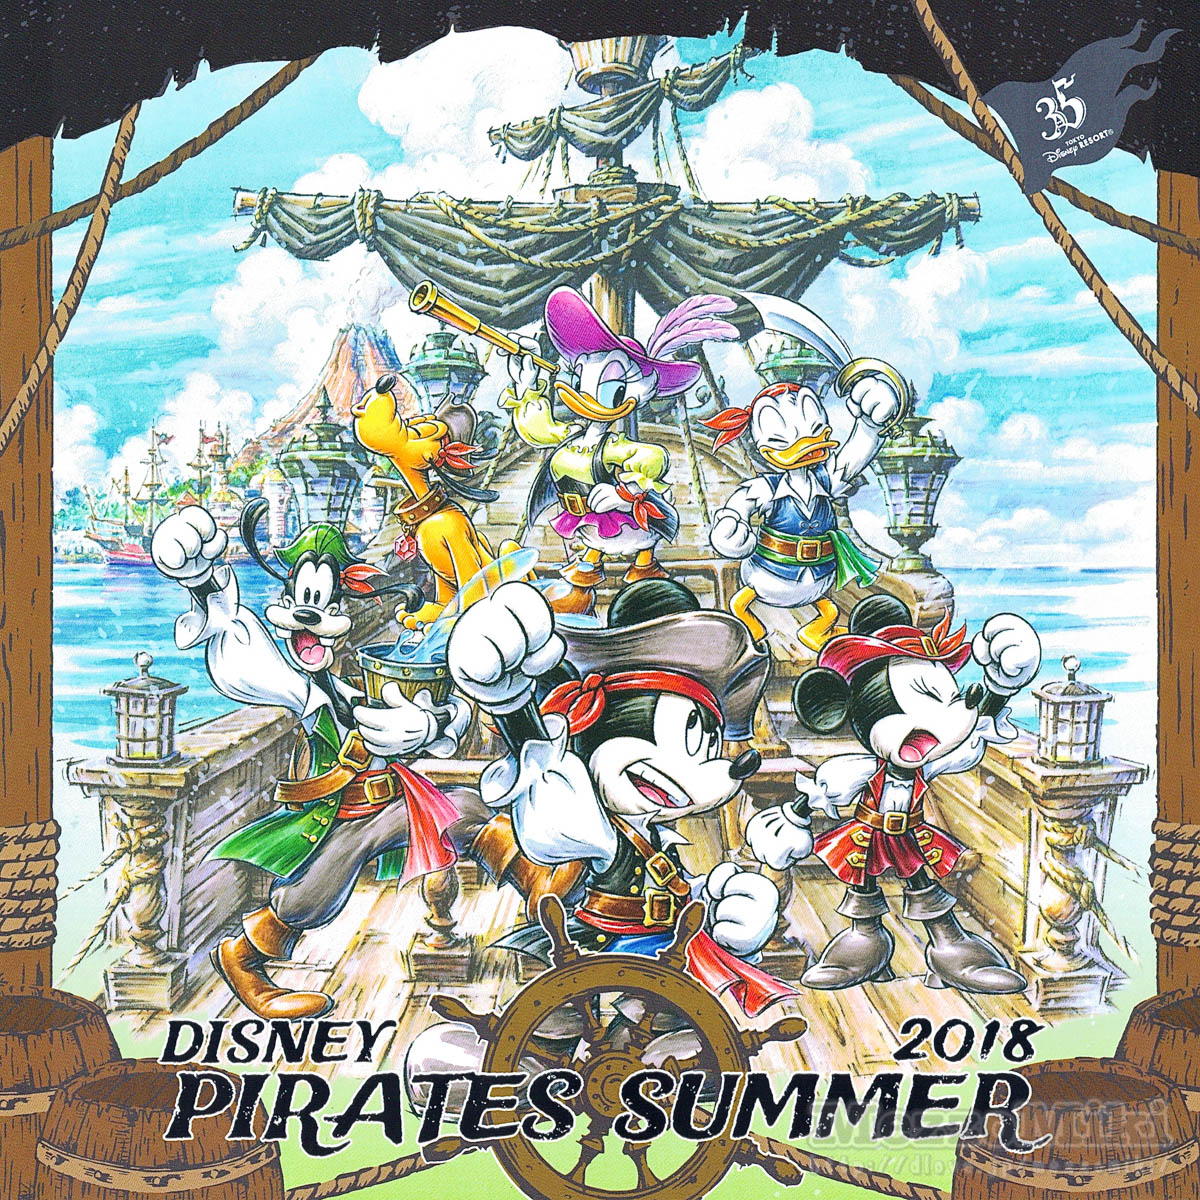 海賊コスチュームのミッキー ミニーフォト付き 東京ディズニーシー ディズニー パイレーツ サマー18 スナップフォト